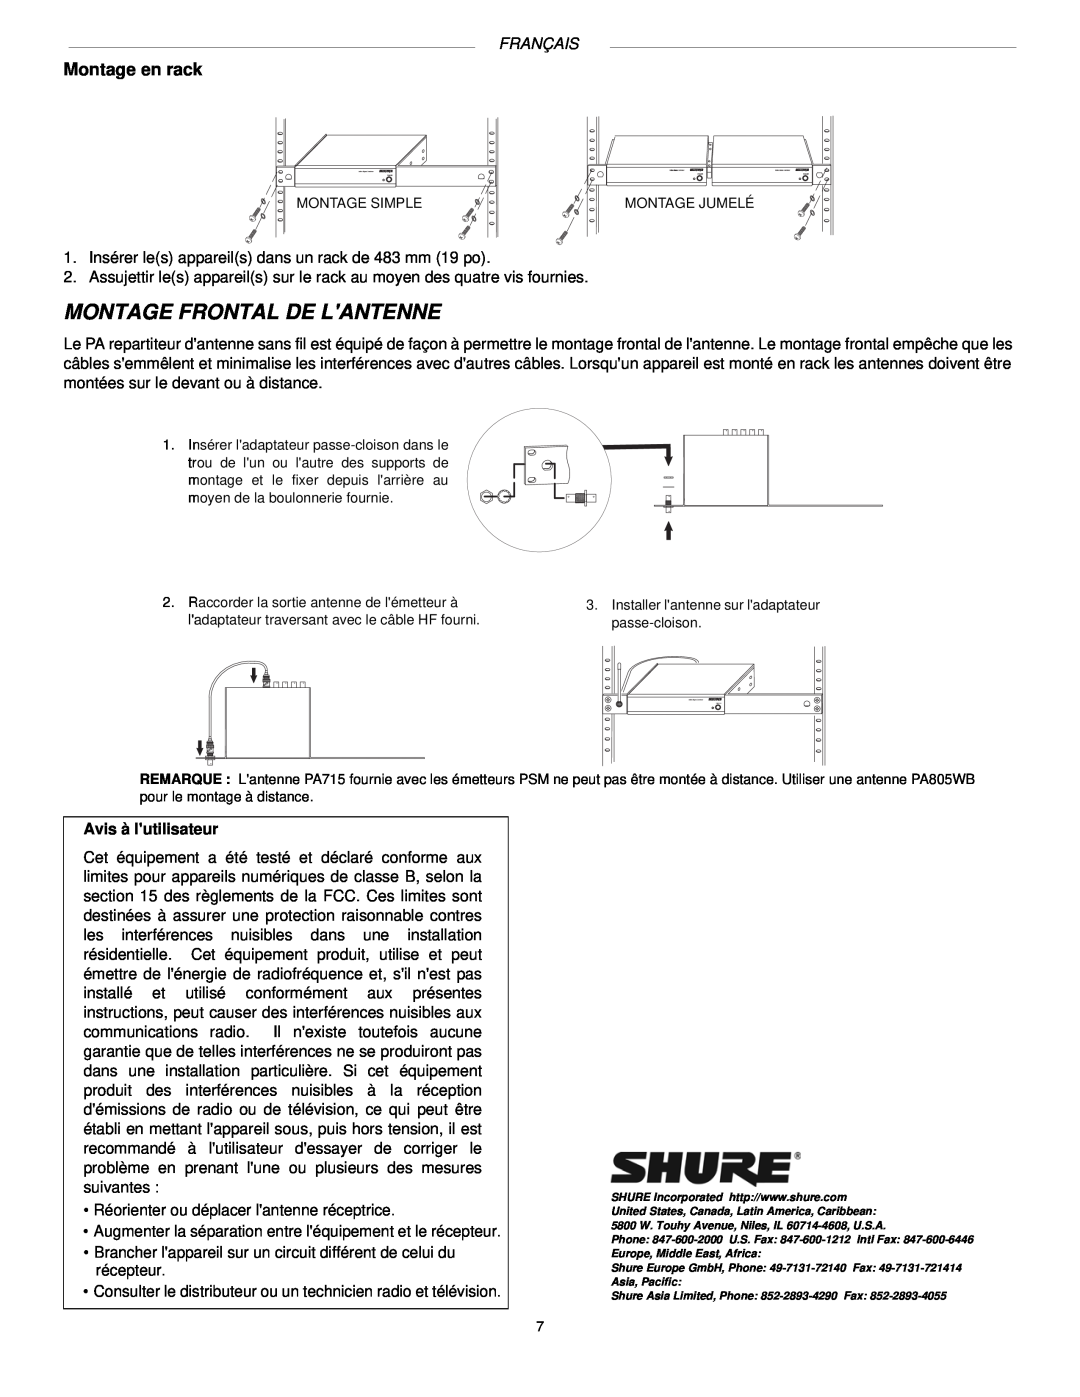 Shure PA760, PA770, PA765 manual Montage Frontal De Lantenne, Montage en rack, Français 